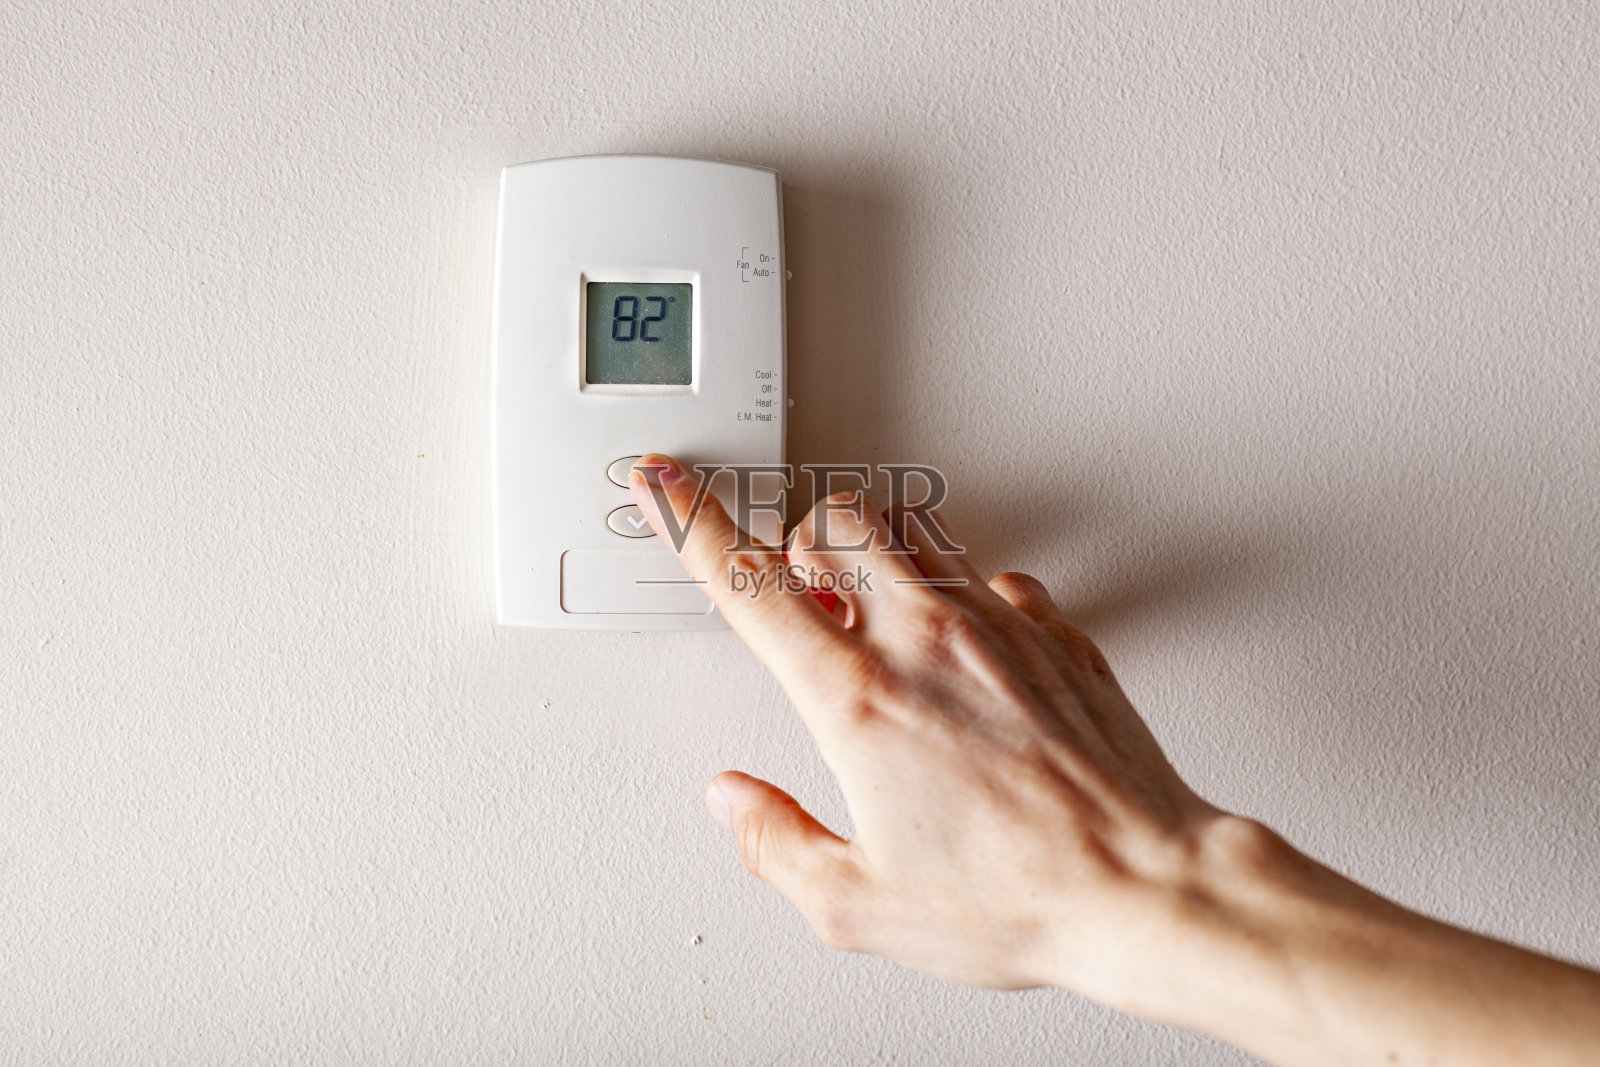 一名妇女正在按墙上装有数字显示温度的恒温器的向上按钮照片摄影图片